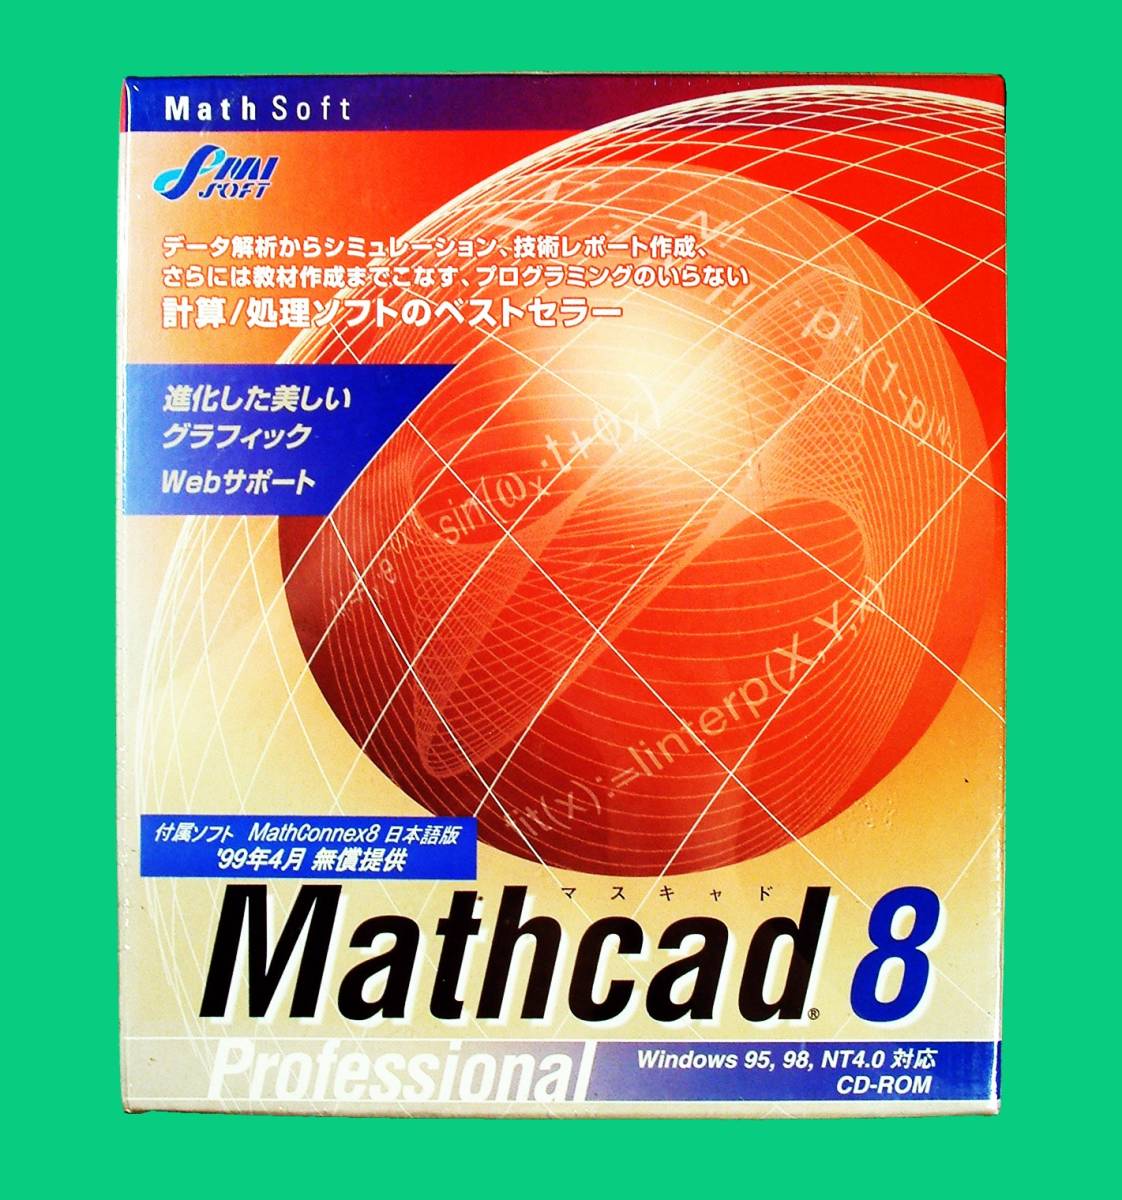 【4777】住友金属システム Mathcad 8 Professional 未開封 マスキャド 技術計算 数式計算 レポート MathConnex 連携(MatLaB，S-Plus，Axum等)